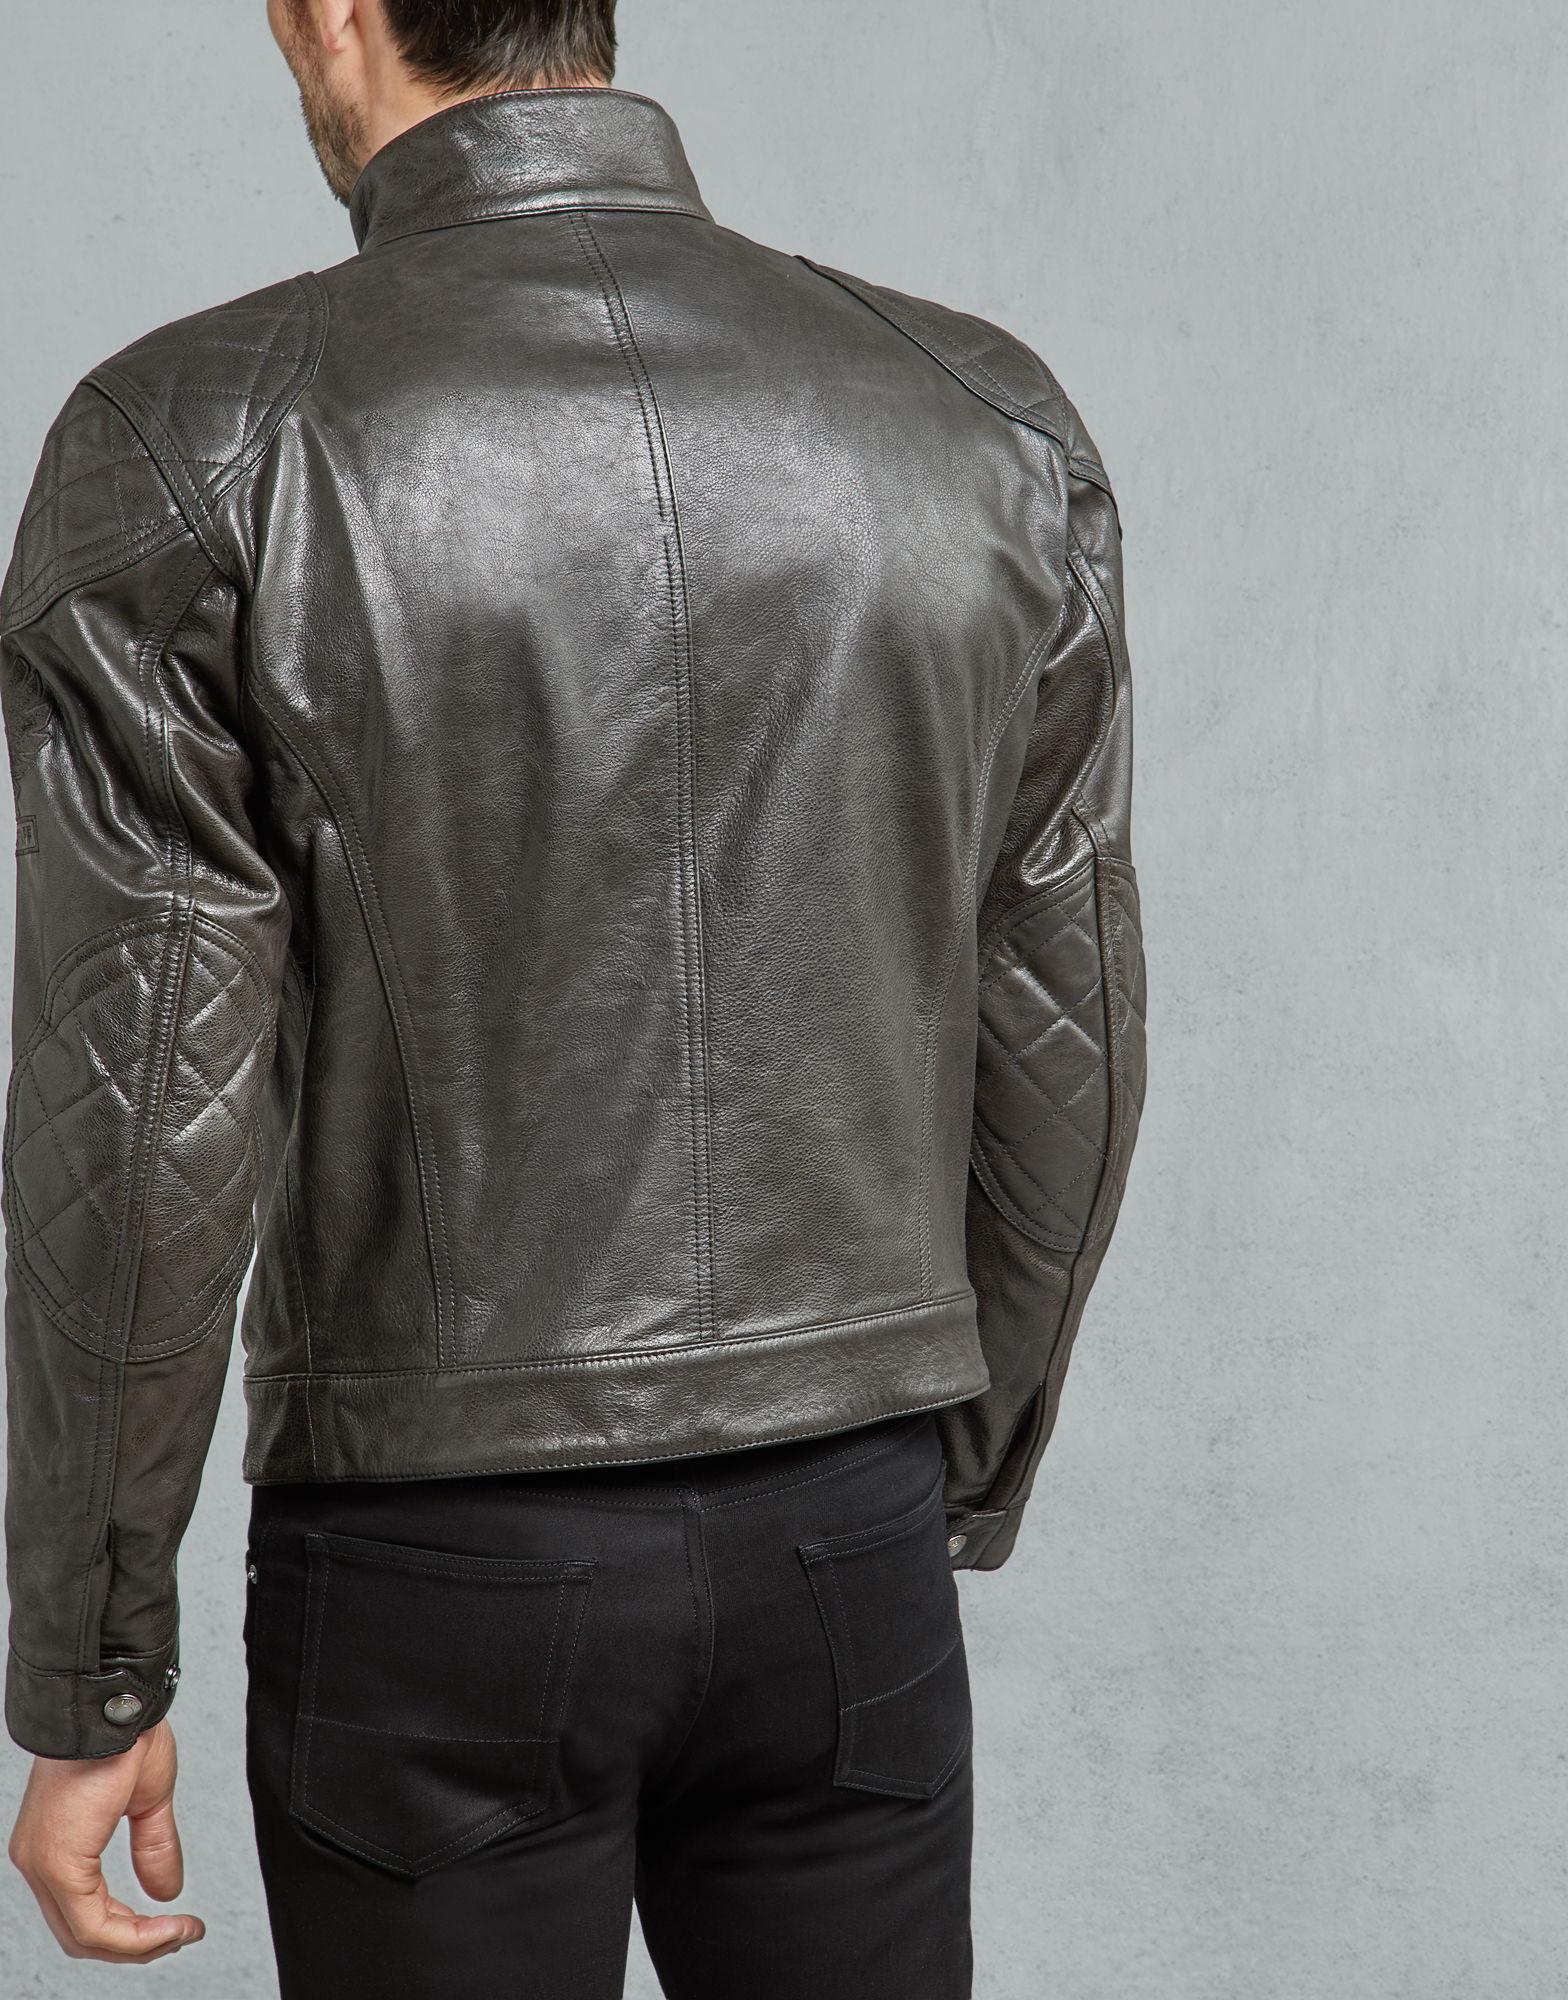 Belstaff Leather Brooklands Motorcycle Jacket in Antique Black (Black) for  Men - Lyst